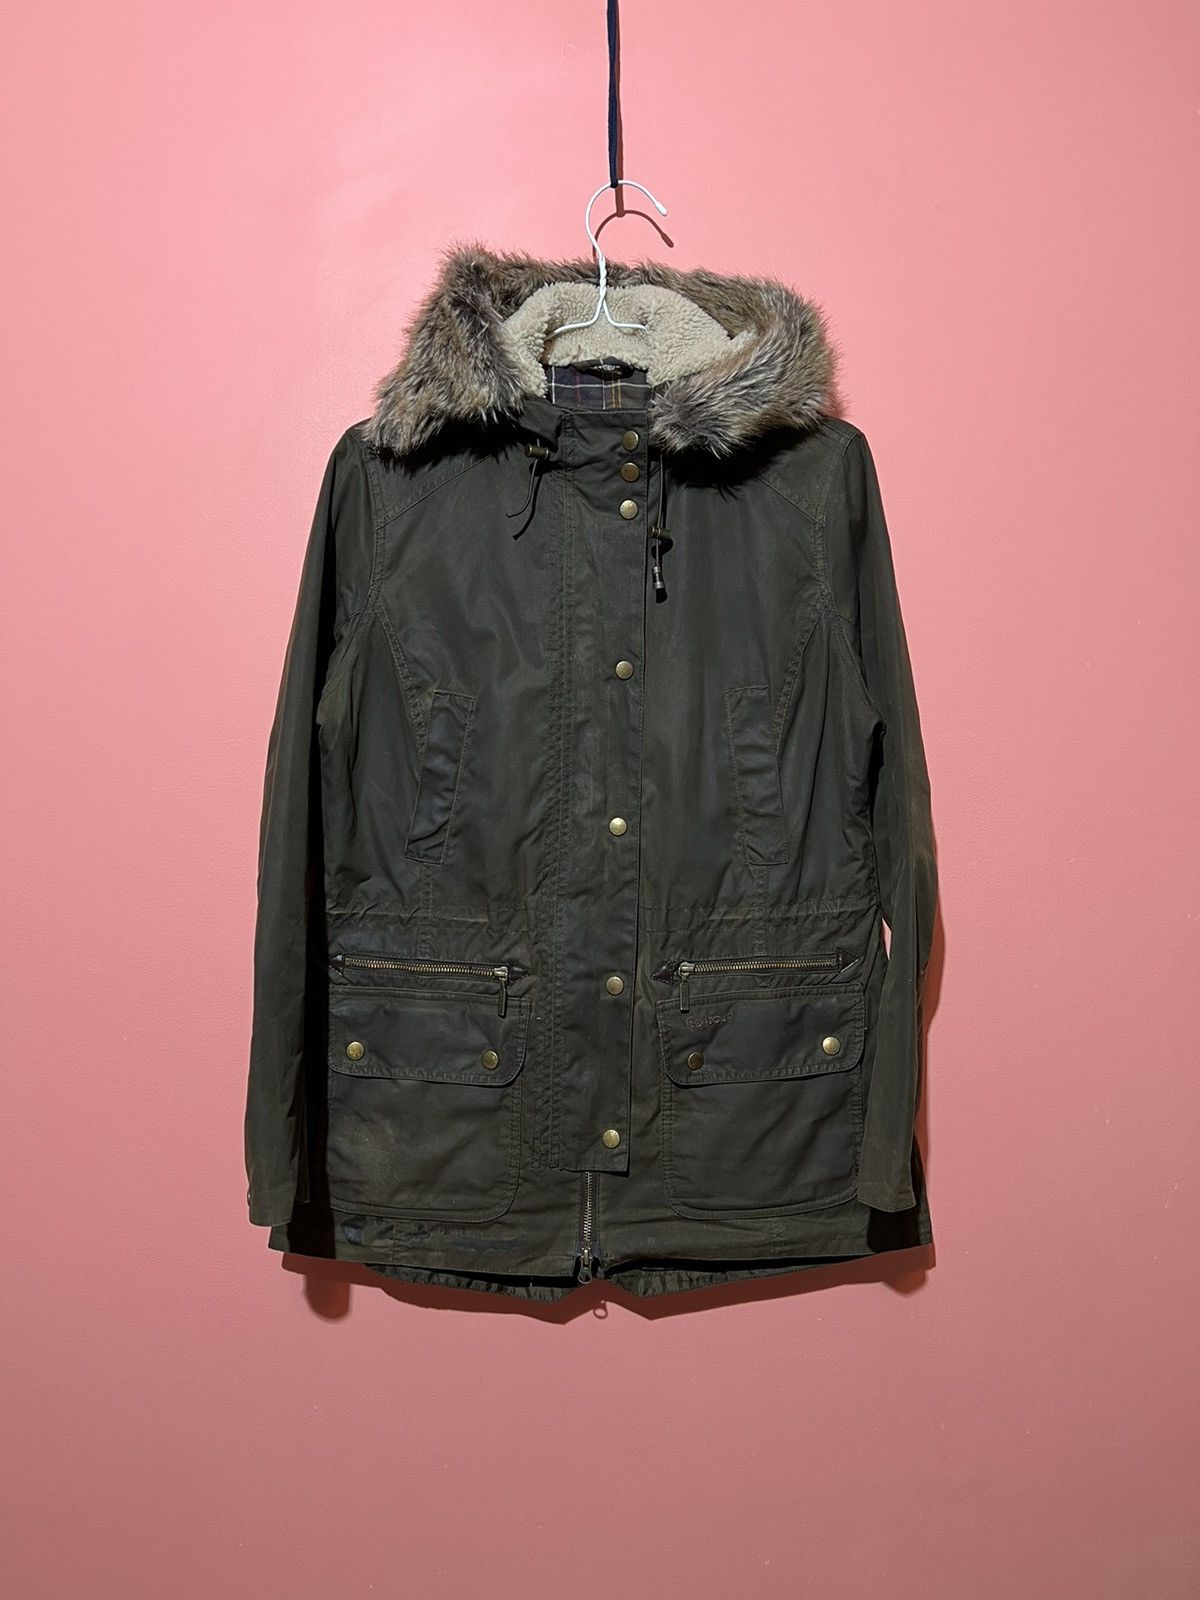 Barbour Barbour winter jacket women’s parka kelsall streetwear | Grailed